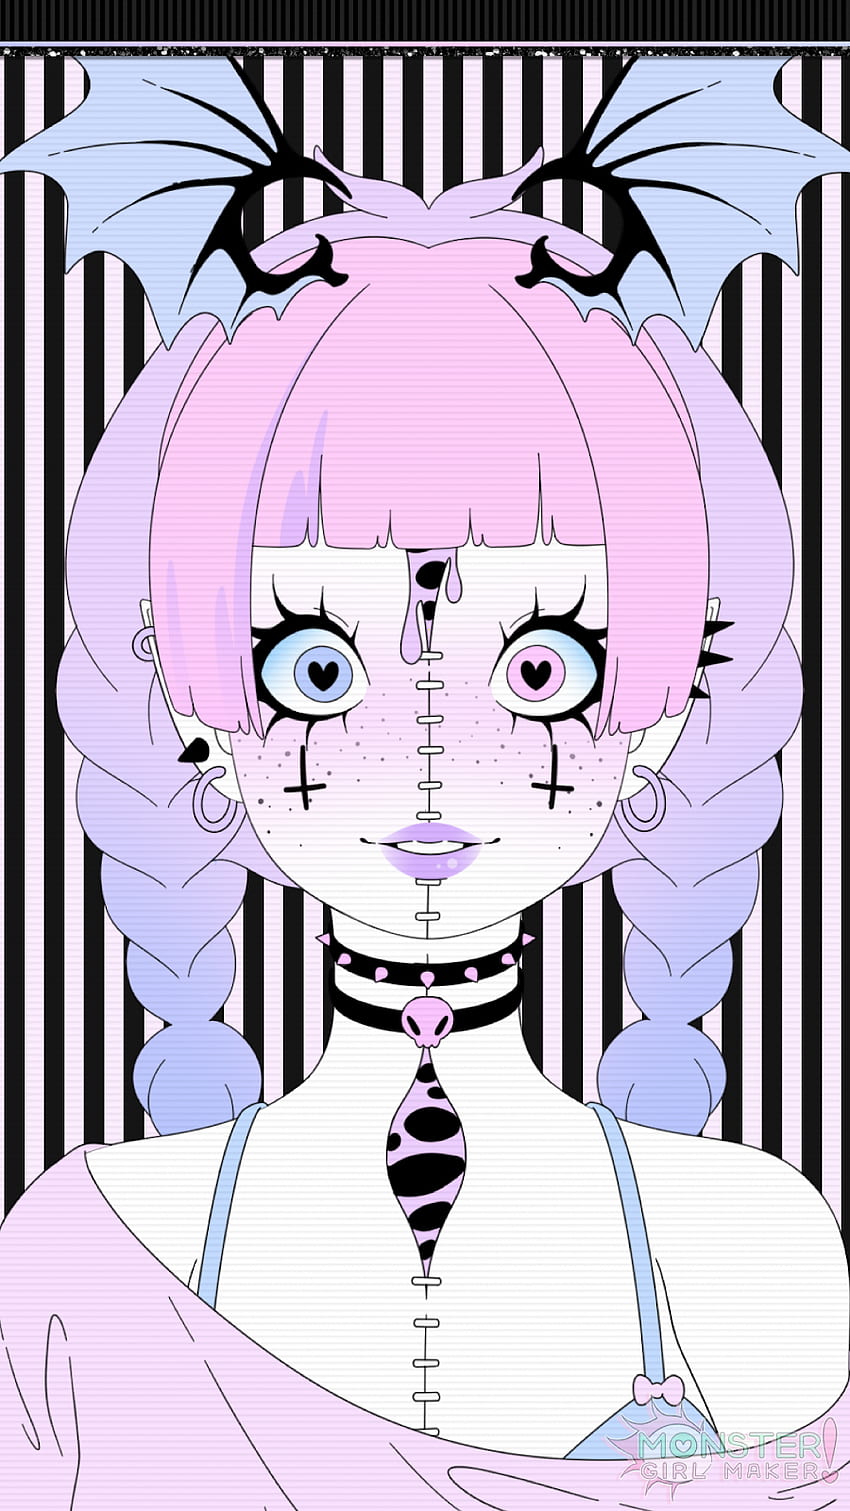 Cute Goth Girl, Gothic Kawaii HD phone wallpaper